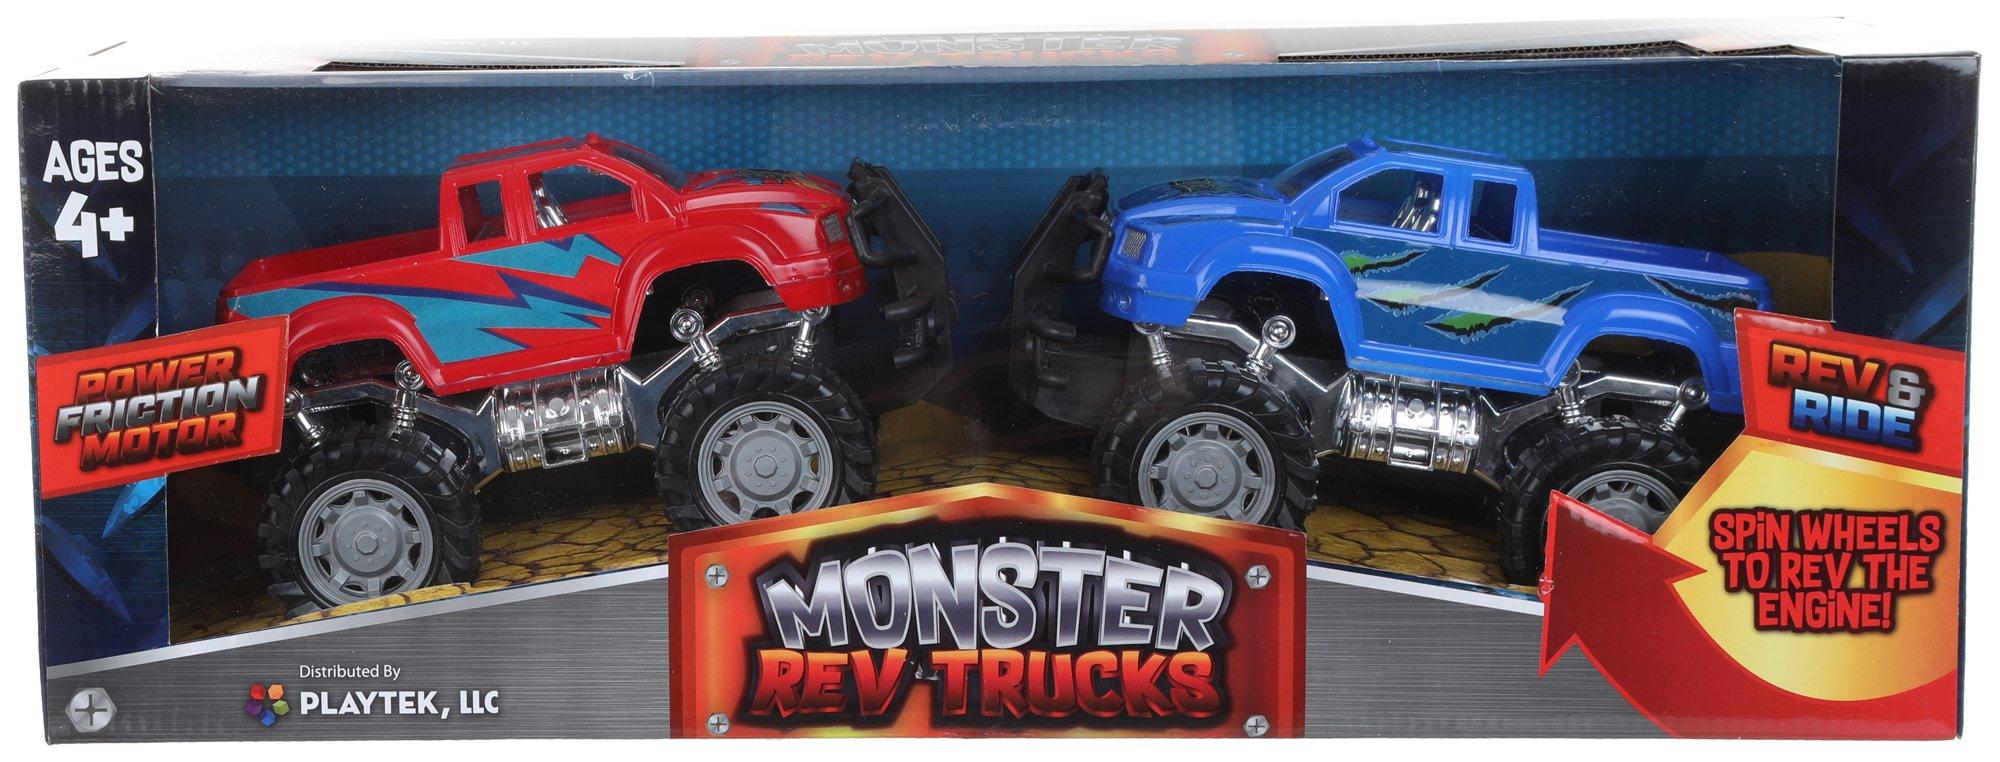 Monster Rev Truck 2 Pc Play Set